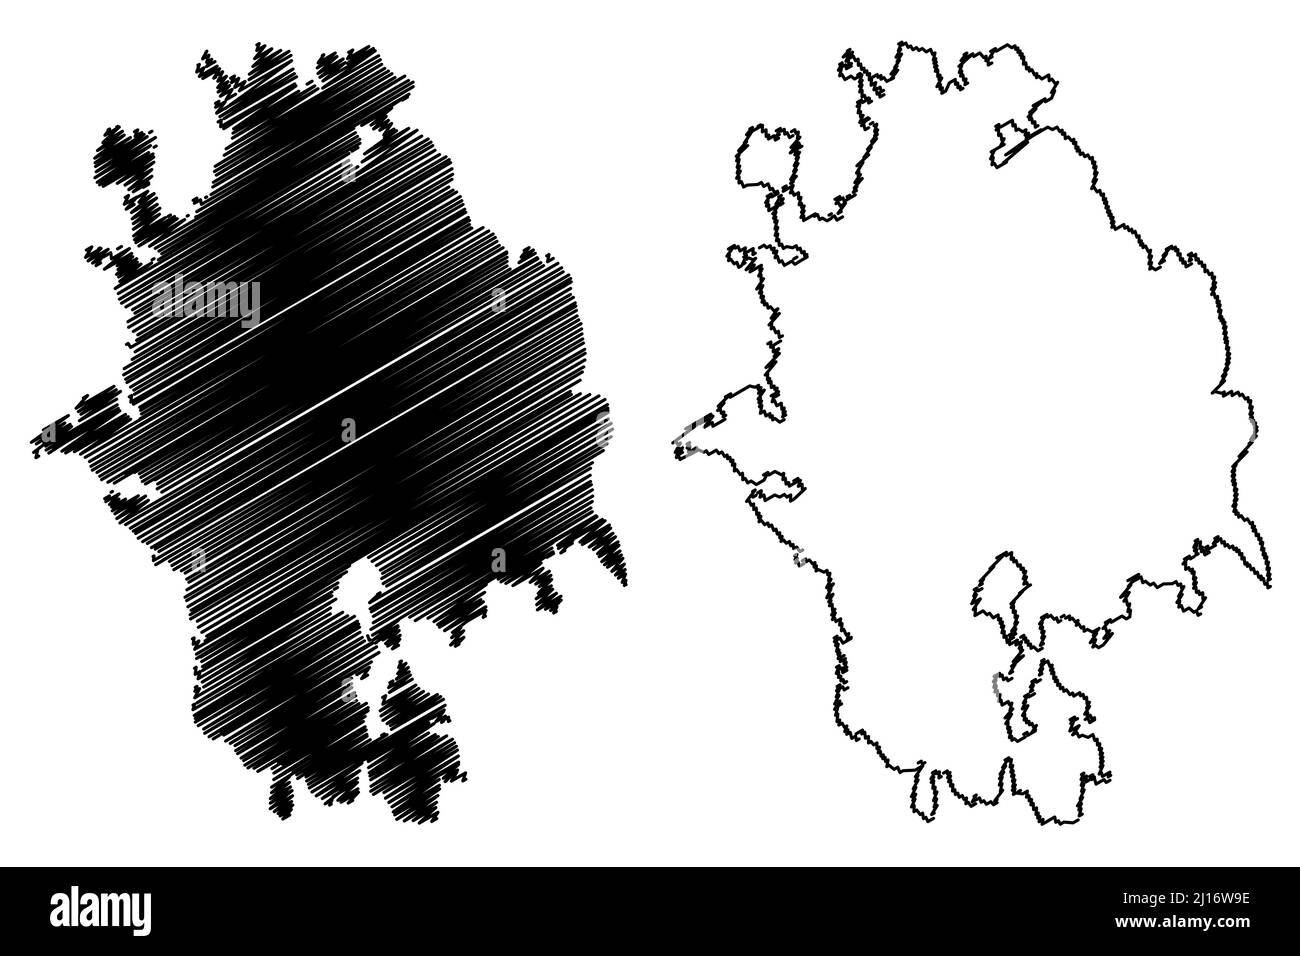 Kumlinge island (Republic of Finland, Aland Islands) map vector illustration, scribble sketch Kumlinge map Stock Vector